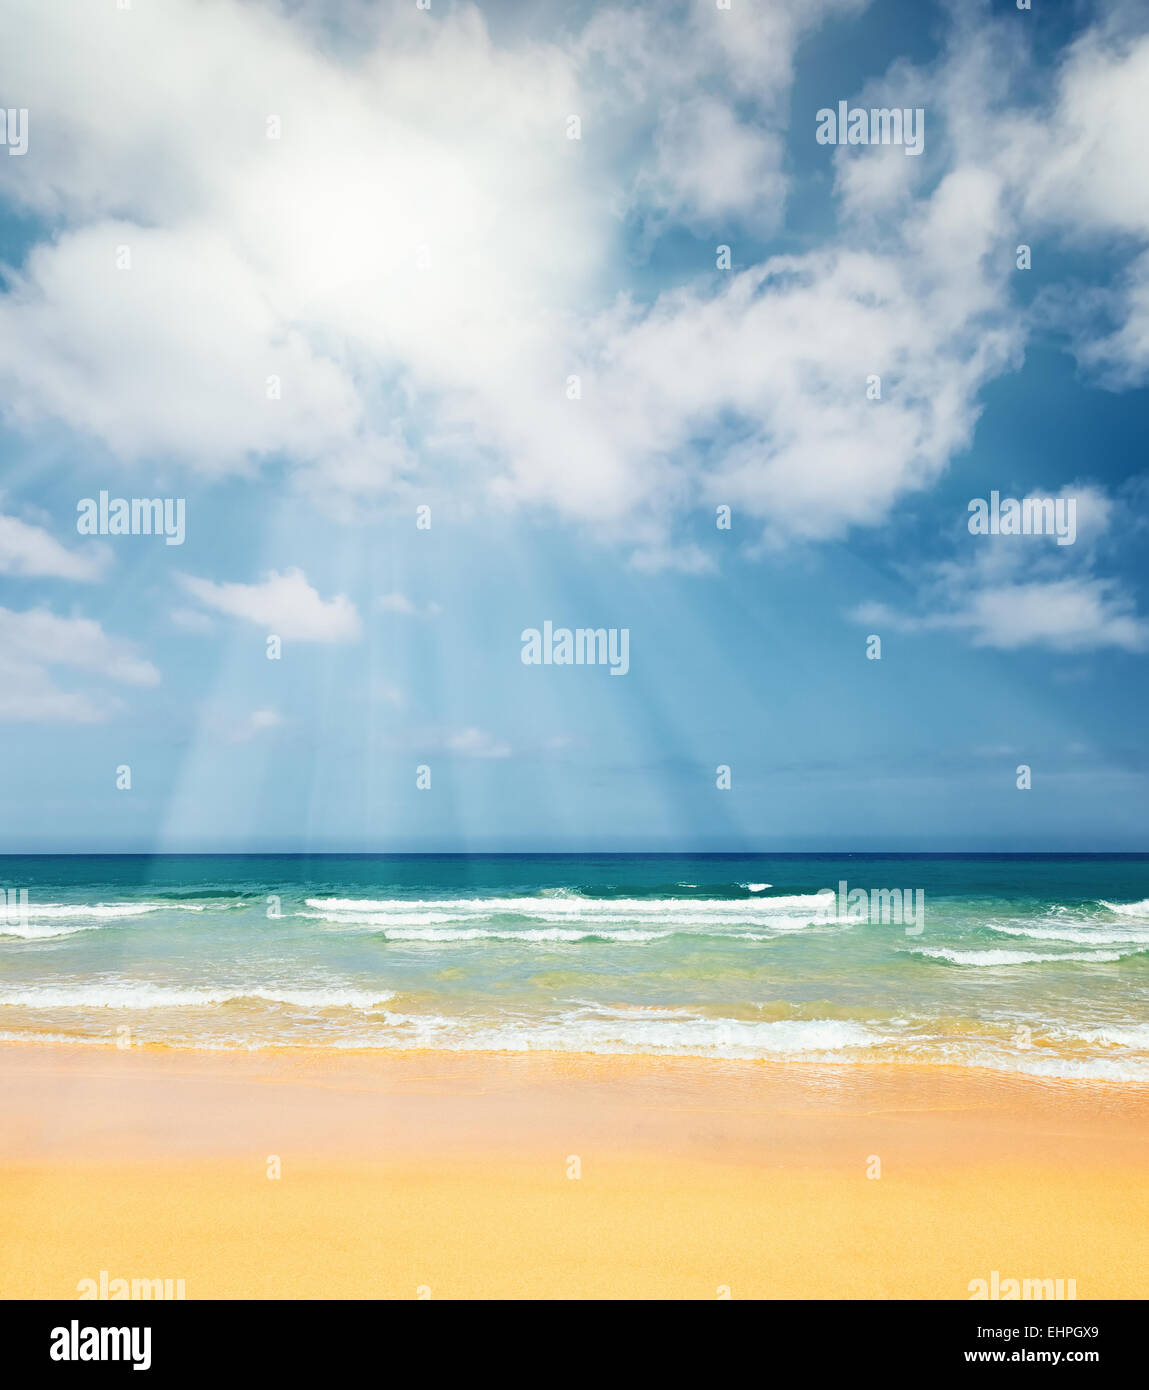 Beautiful ocean beach Stock Photo